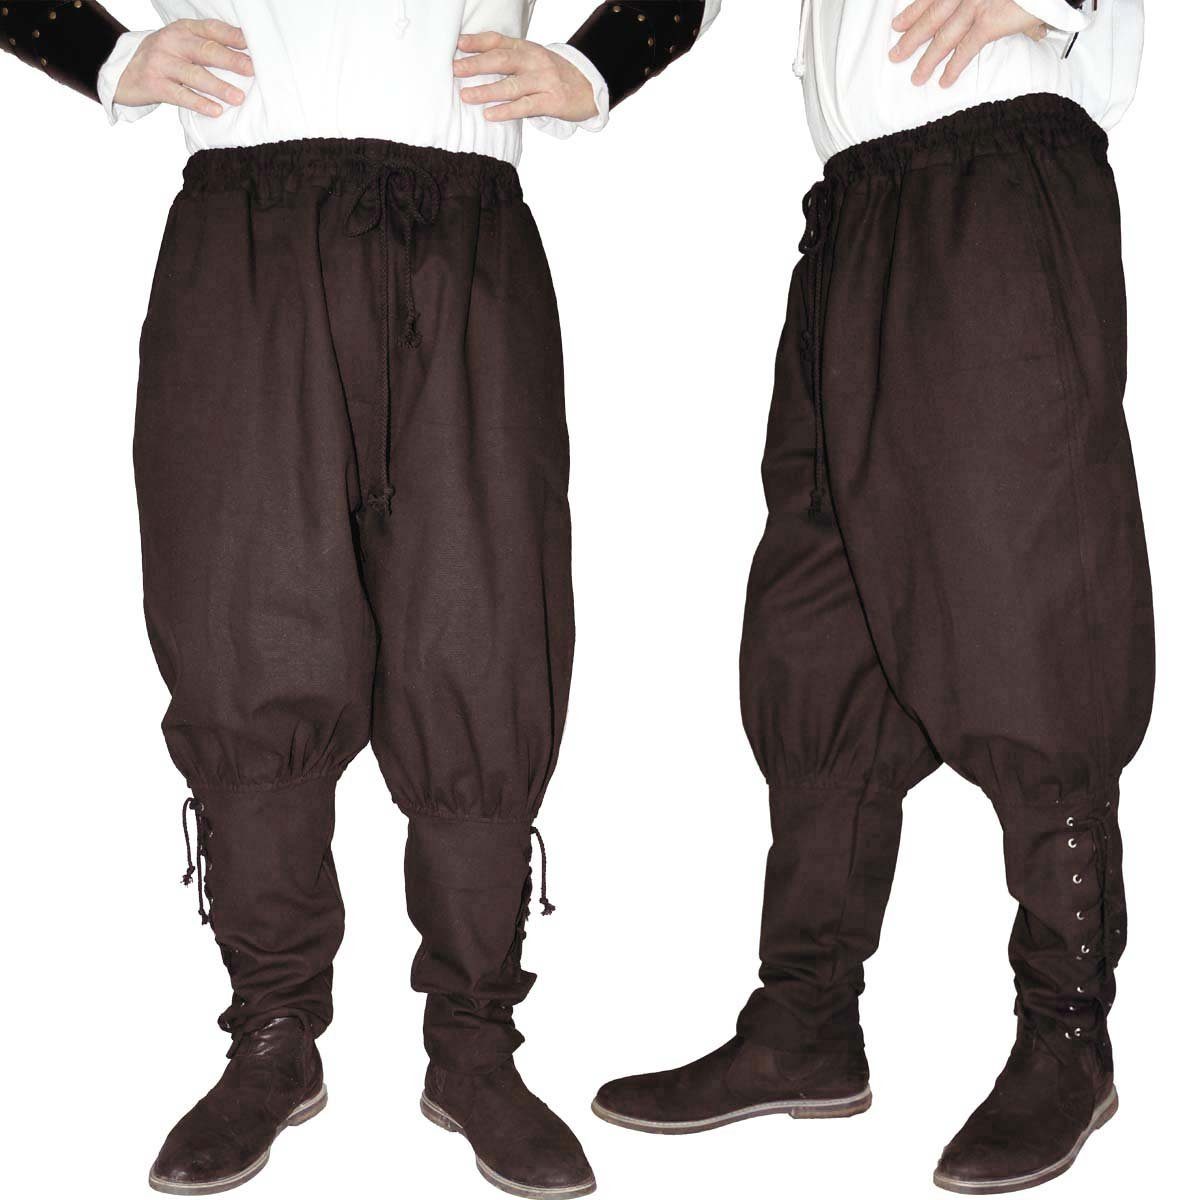 Maylynn Wikinger-Kostüm Mittelalter Hose mit 2 Taschen Wikinger Kelte Pirat